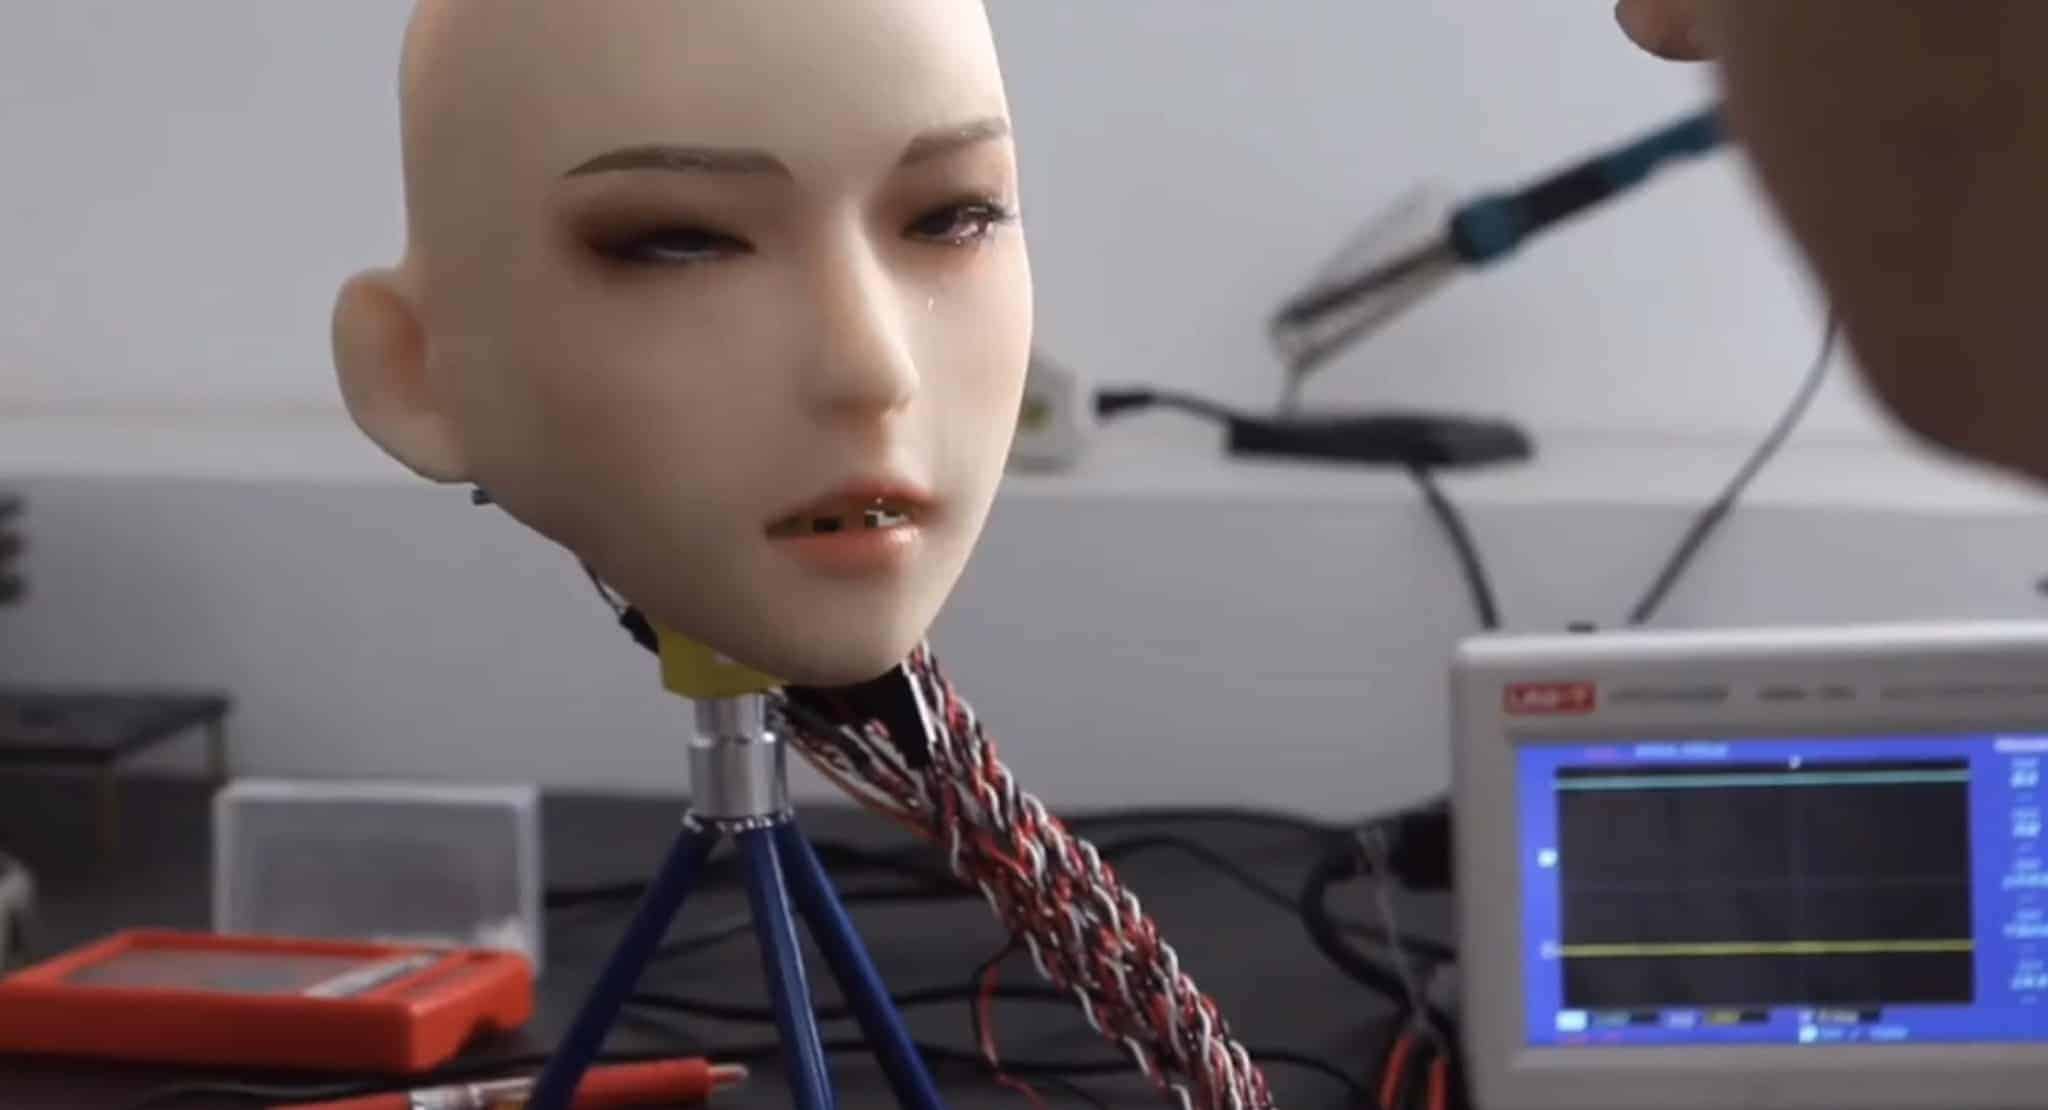 DS Doll Robotics Robotic Head